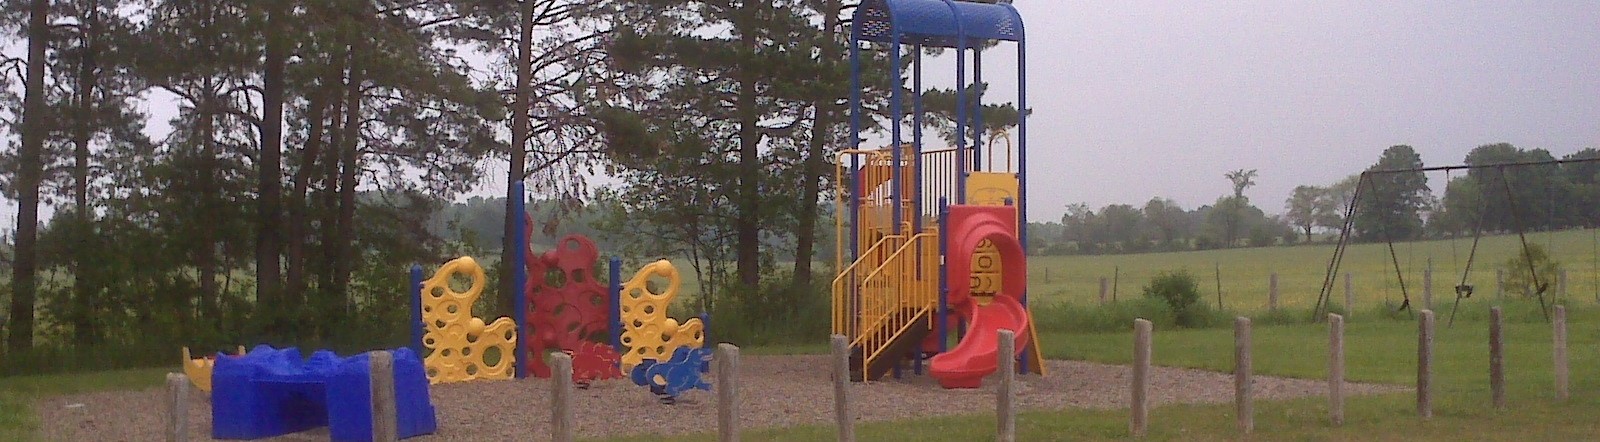 Photo of Allenford Playground